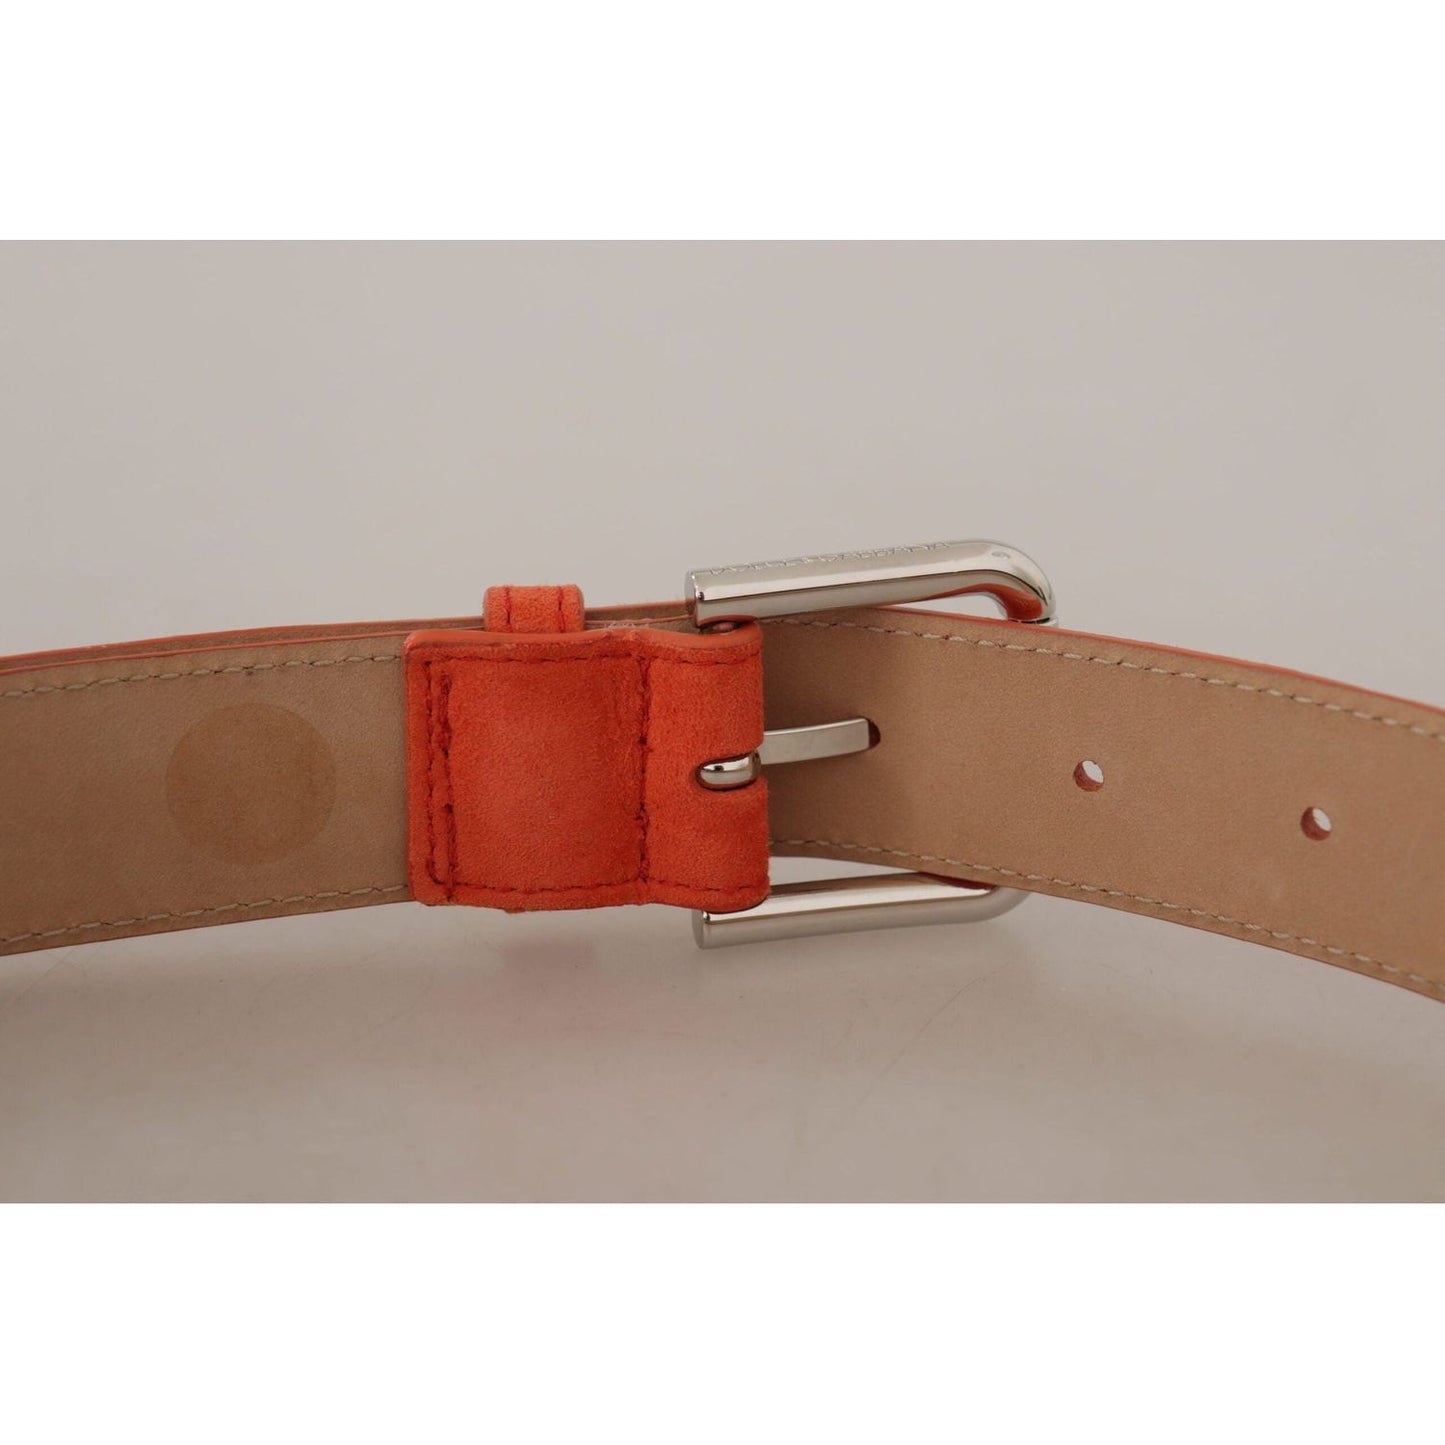 Dolce & Gabbana Elegant Suede Leather Belt in Vibrant Orange orange-leather-suede-silver-logo-metal-buckle-belt